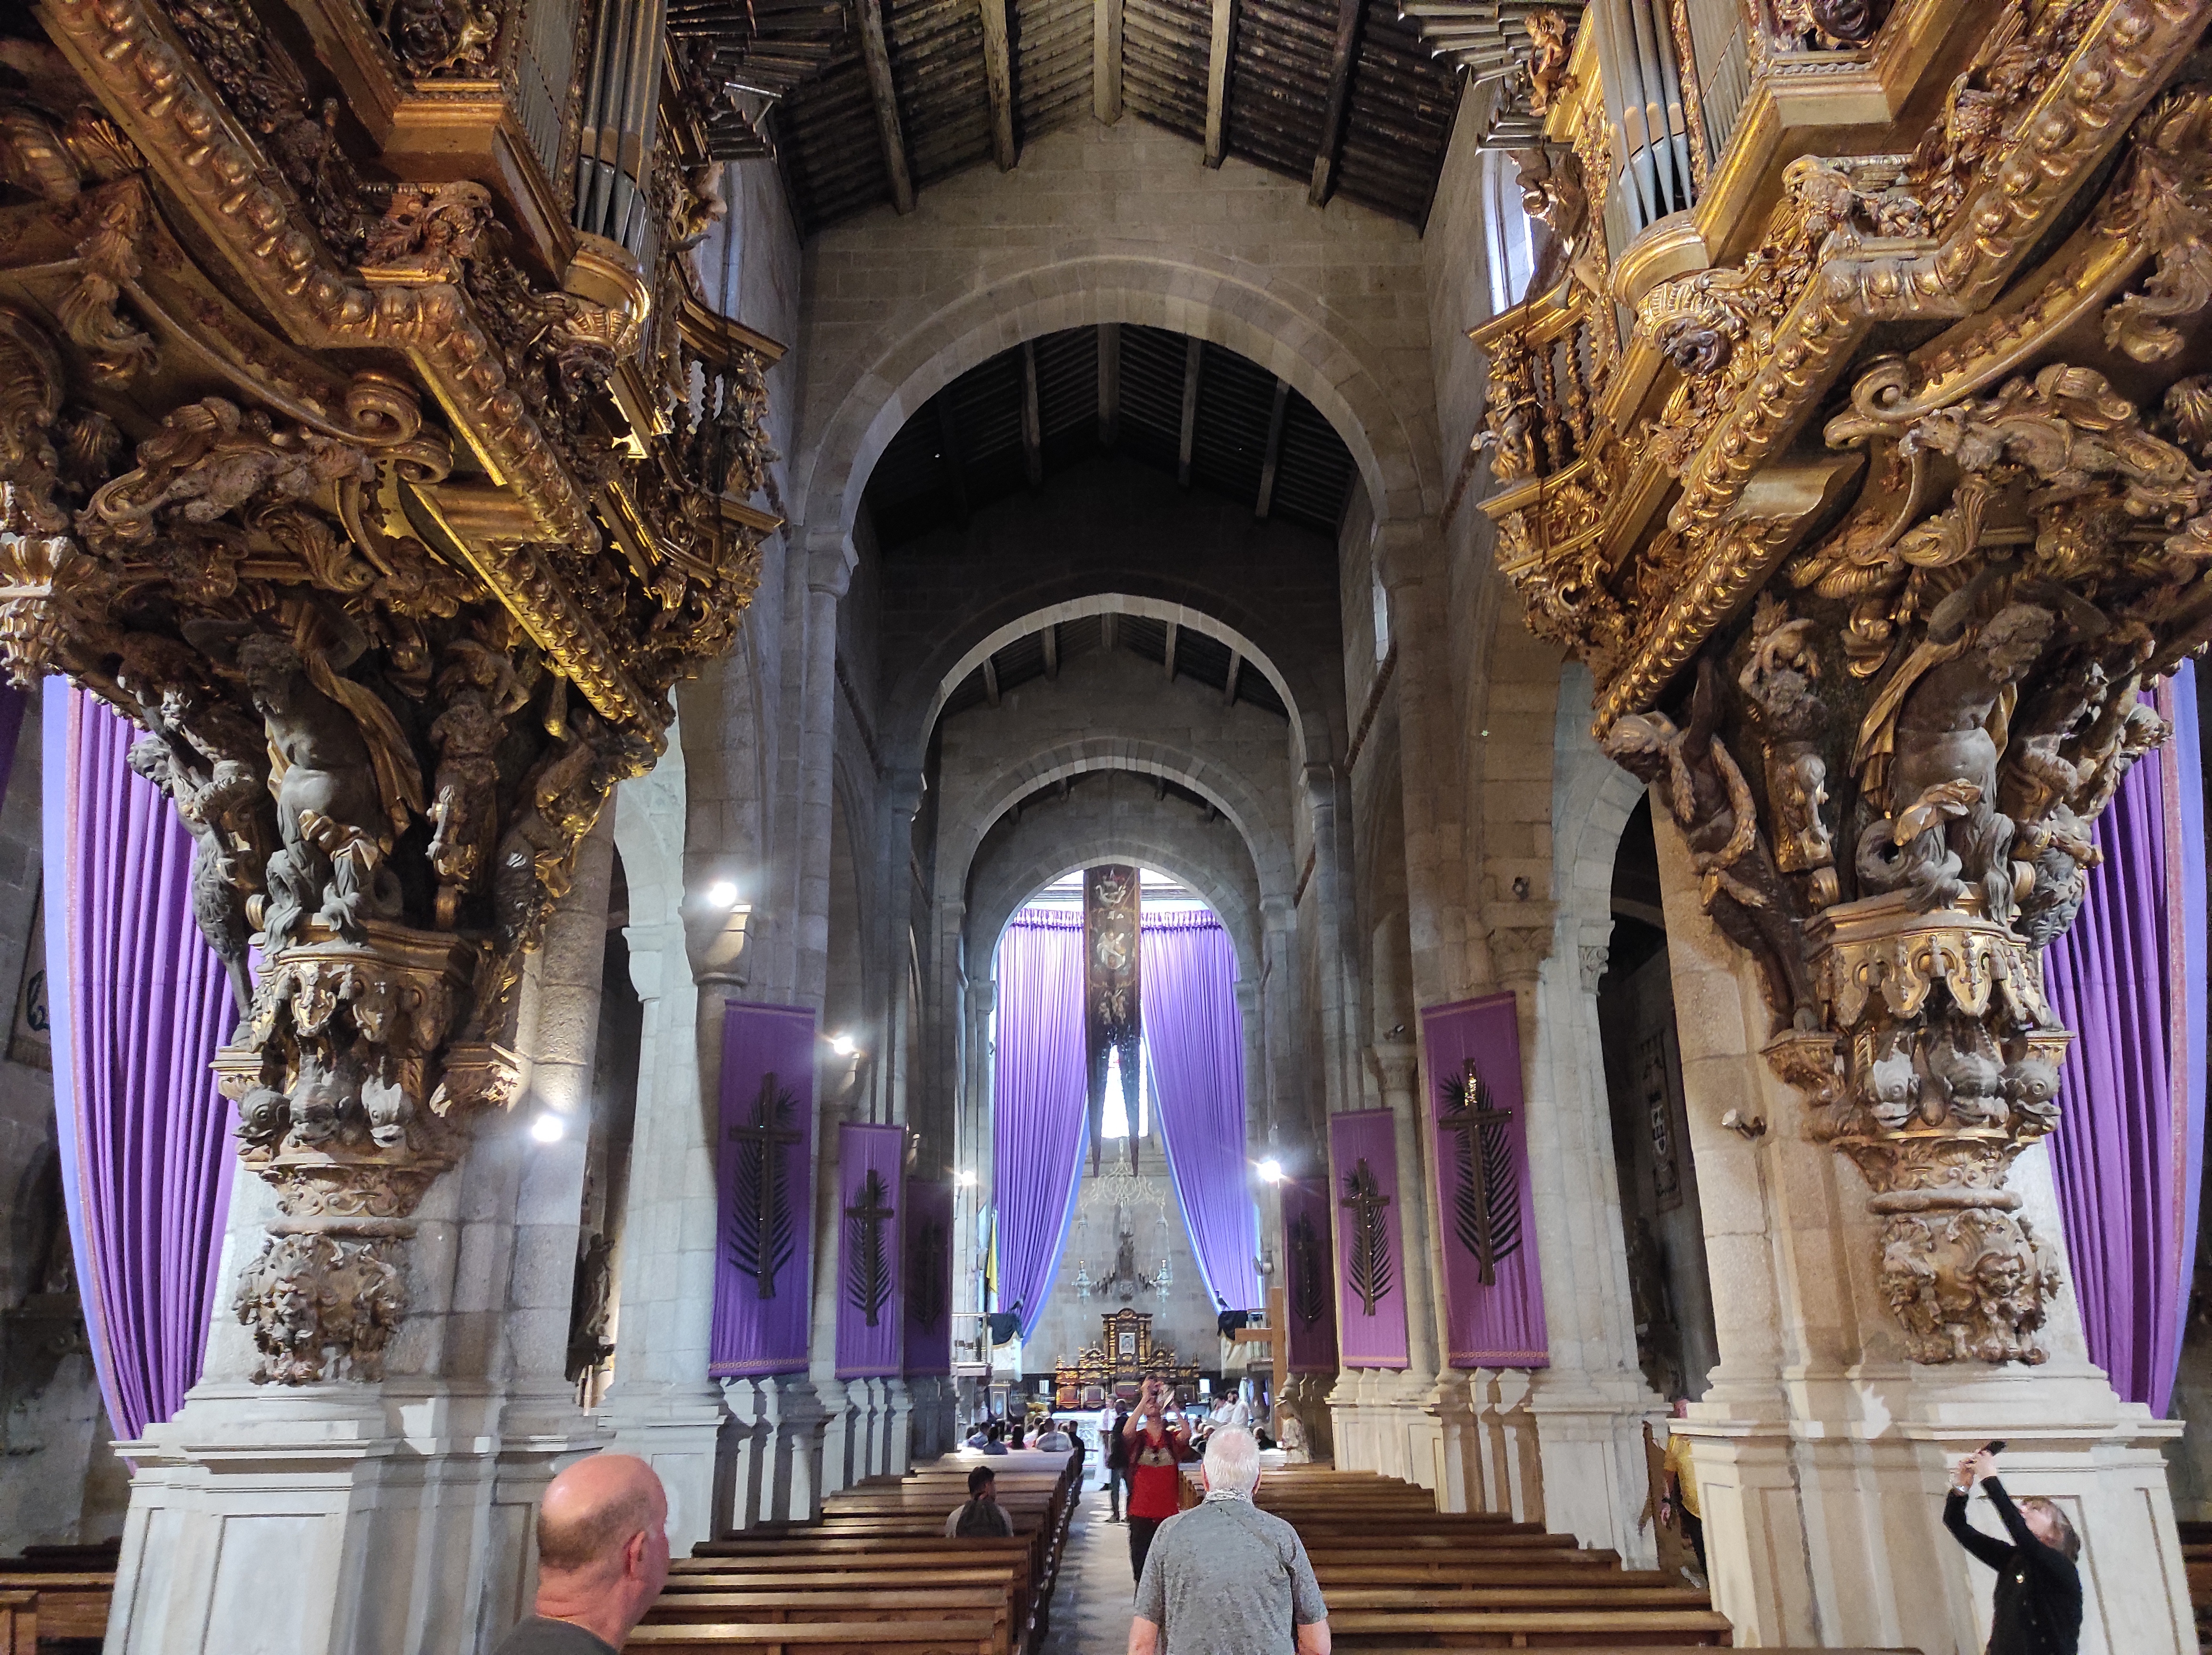 Braga Sé Catedral